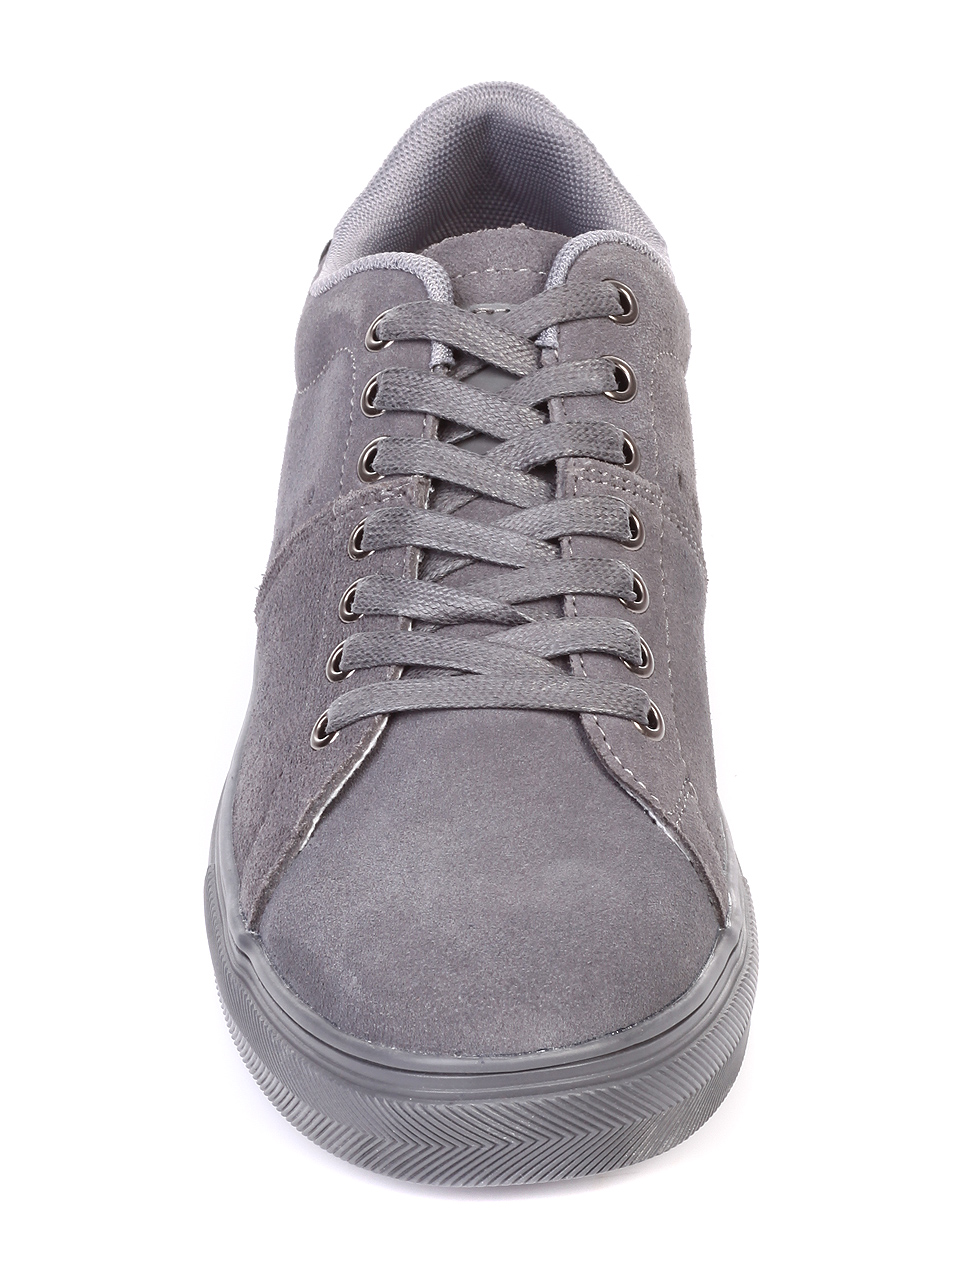 Ежедневни мъжки обувки от естествен велур 7N-19077 grey